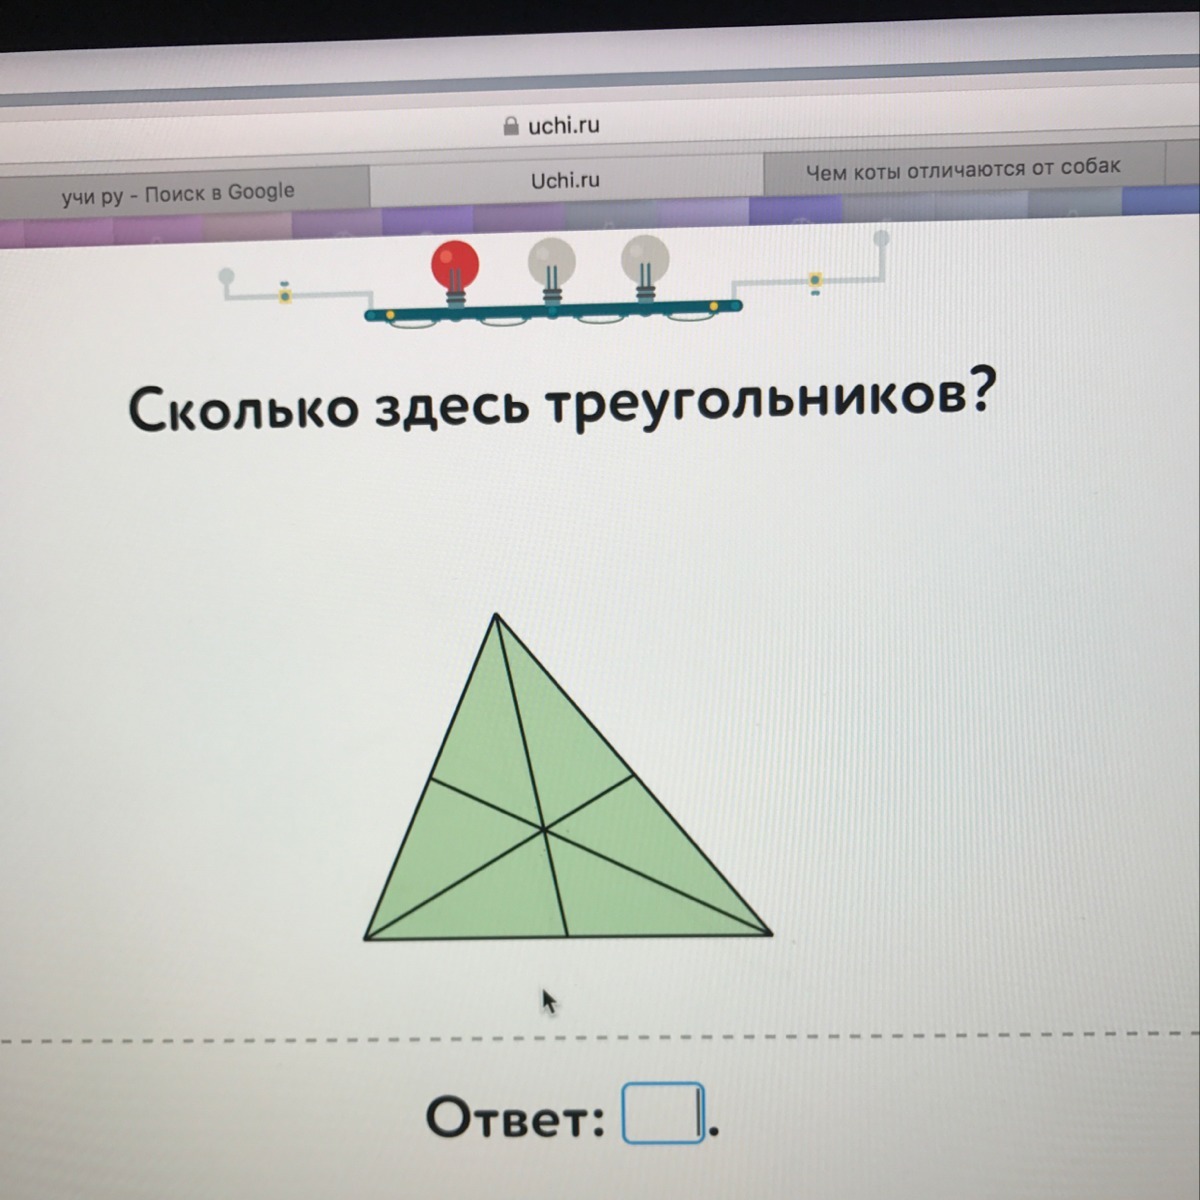 Сколько треугольника учи ру лаборатория. Треугольники ответы. Колько треугольников в Учиру. Сколько треугольников на рисунке учи.ру. Найди здесь треугольников.